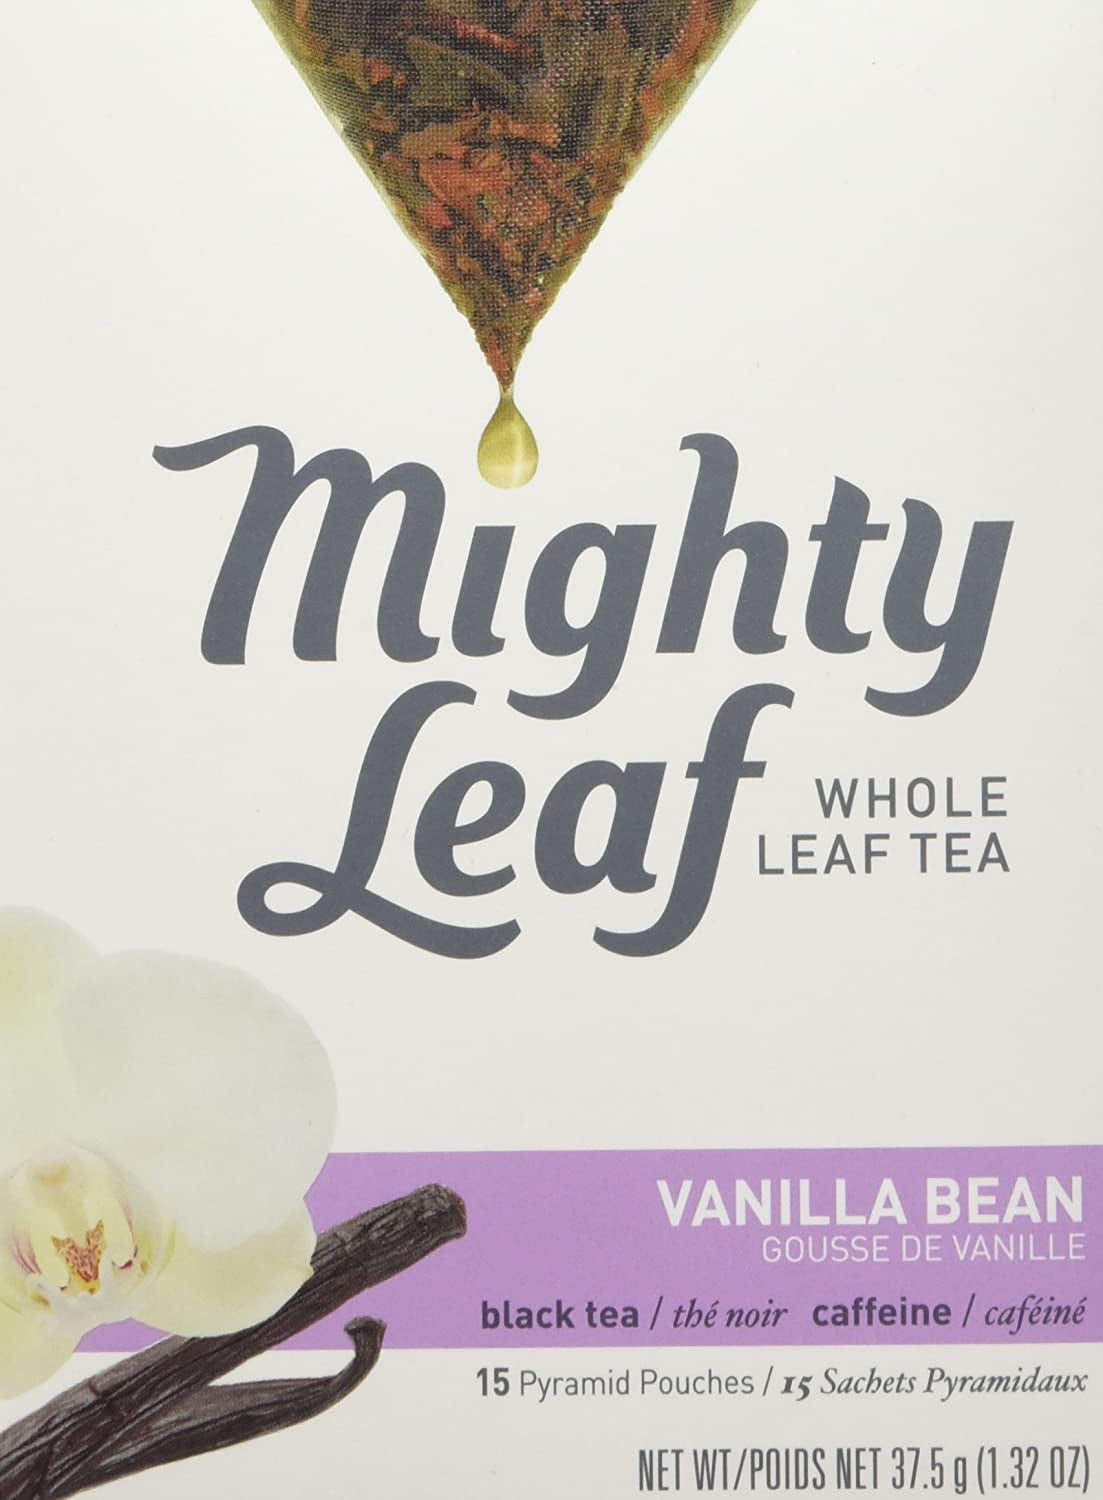 MIGHTY LEAF TEA VANILLA BEAN